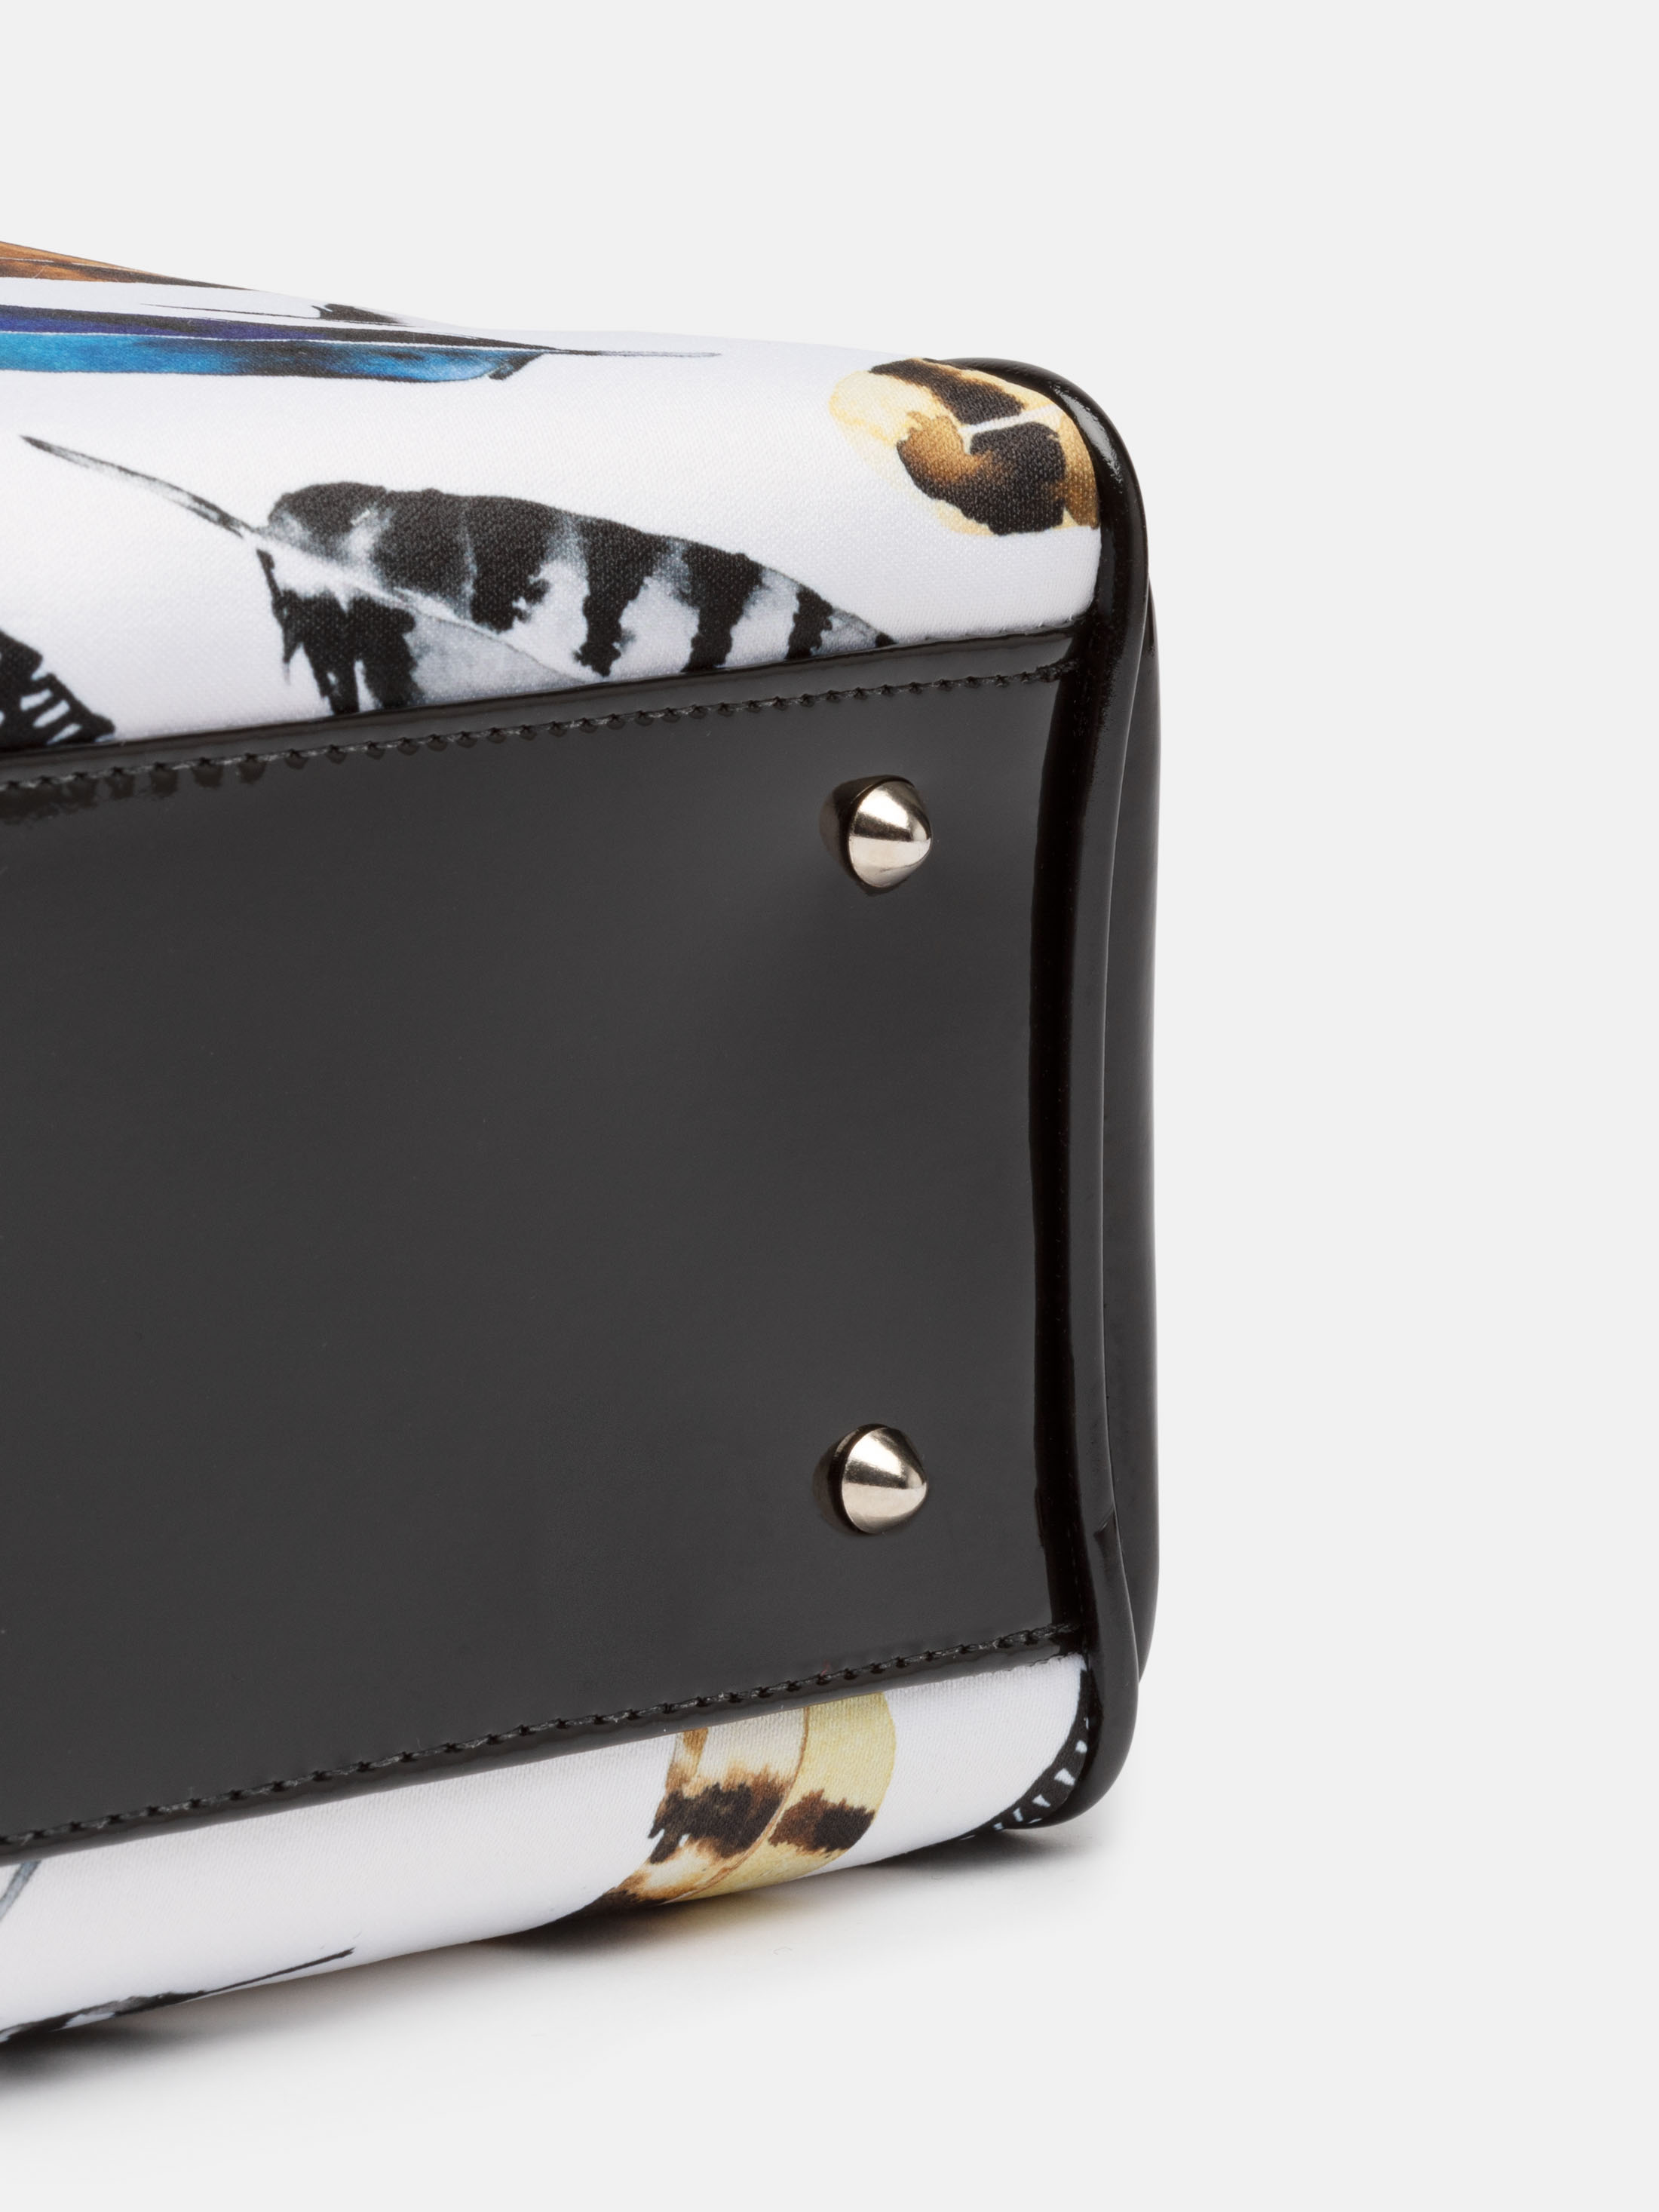 Custom Handbags UK. Design Your Own Personalised Handbags